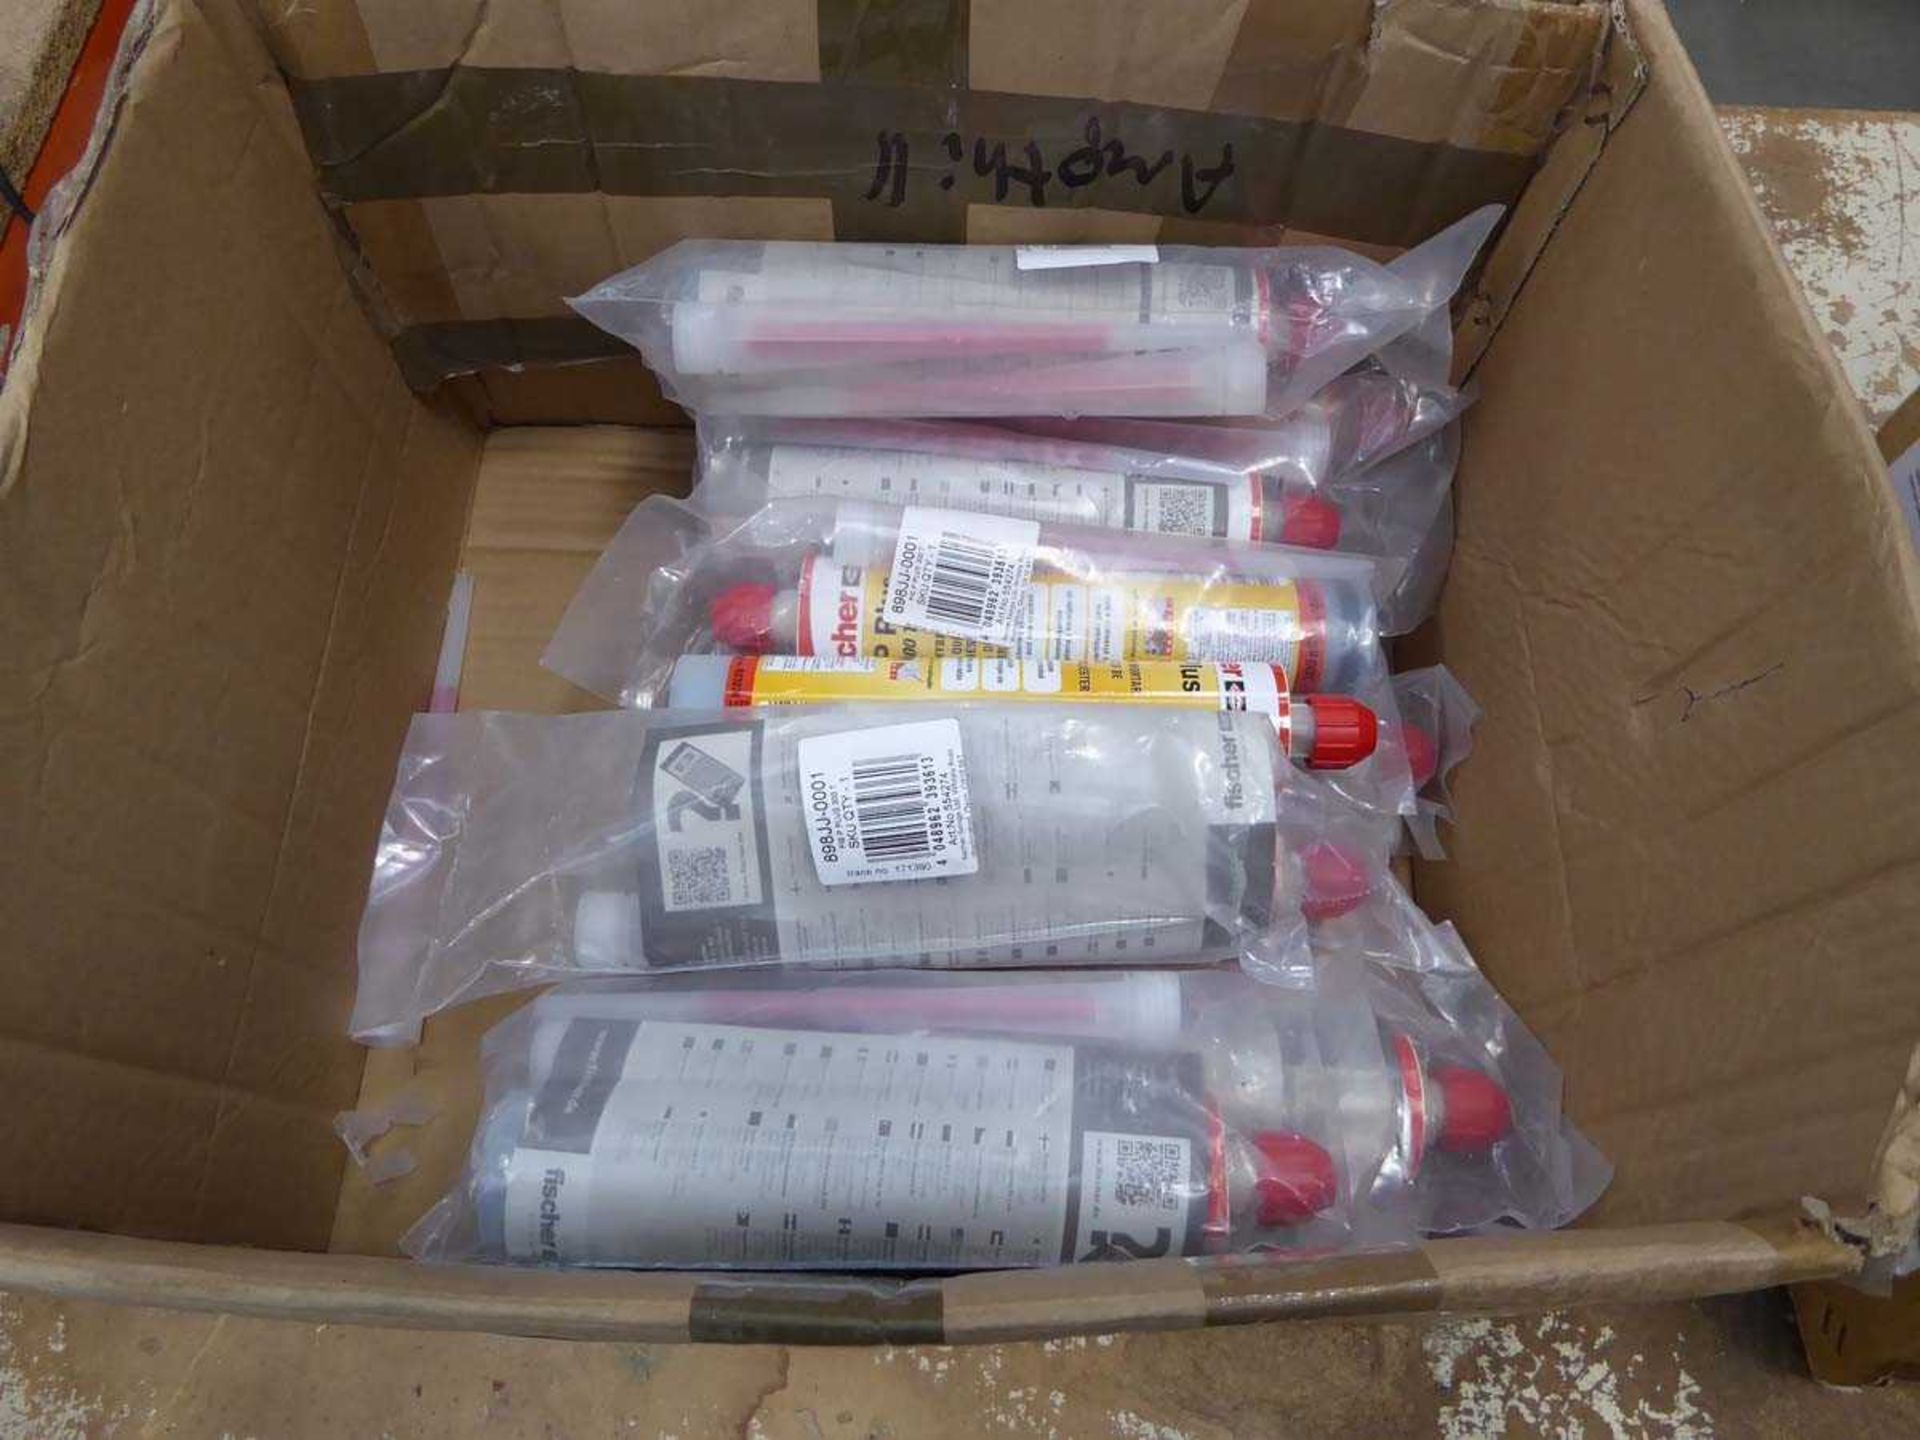 +VAT Box of Chemfix hybrid mortar